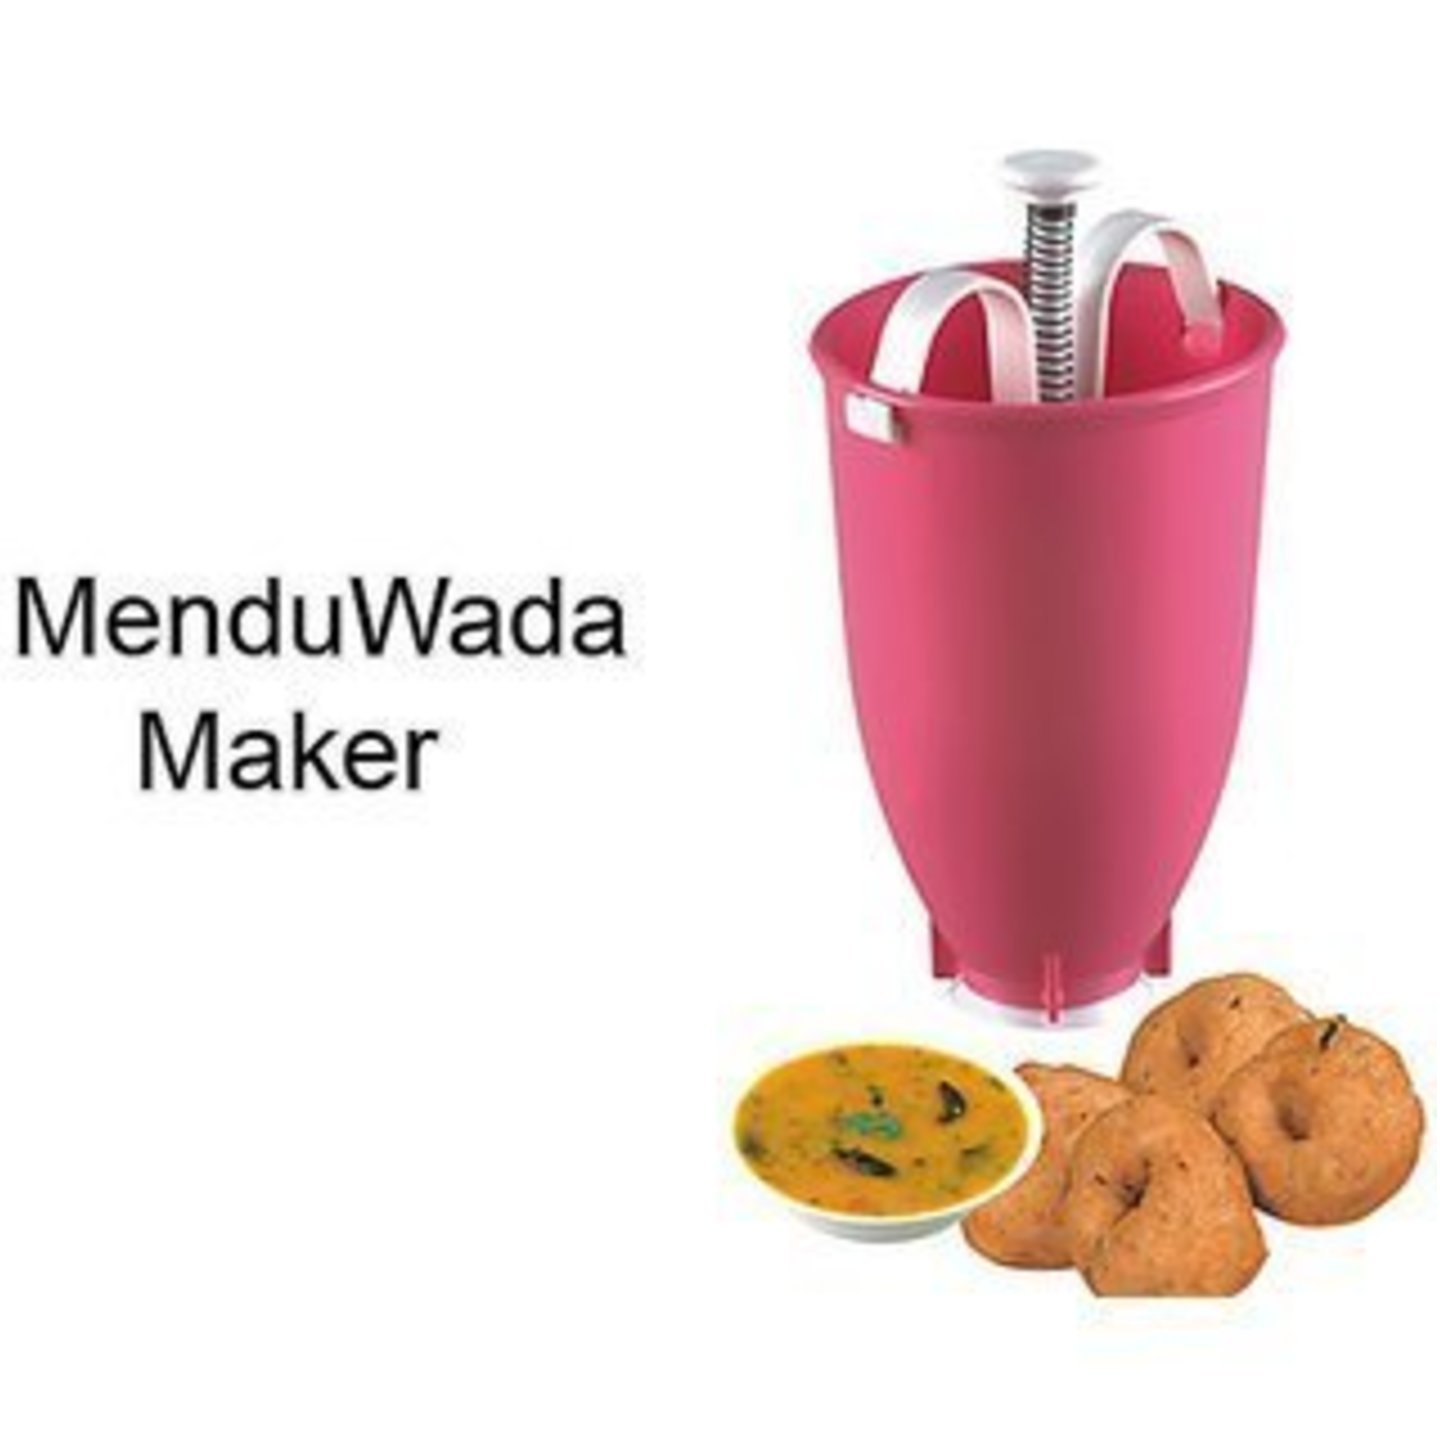 JonPrix Pack of 2 Plastic Deep Fry Medu Vada Donut Maker